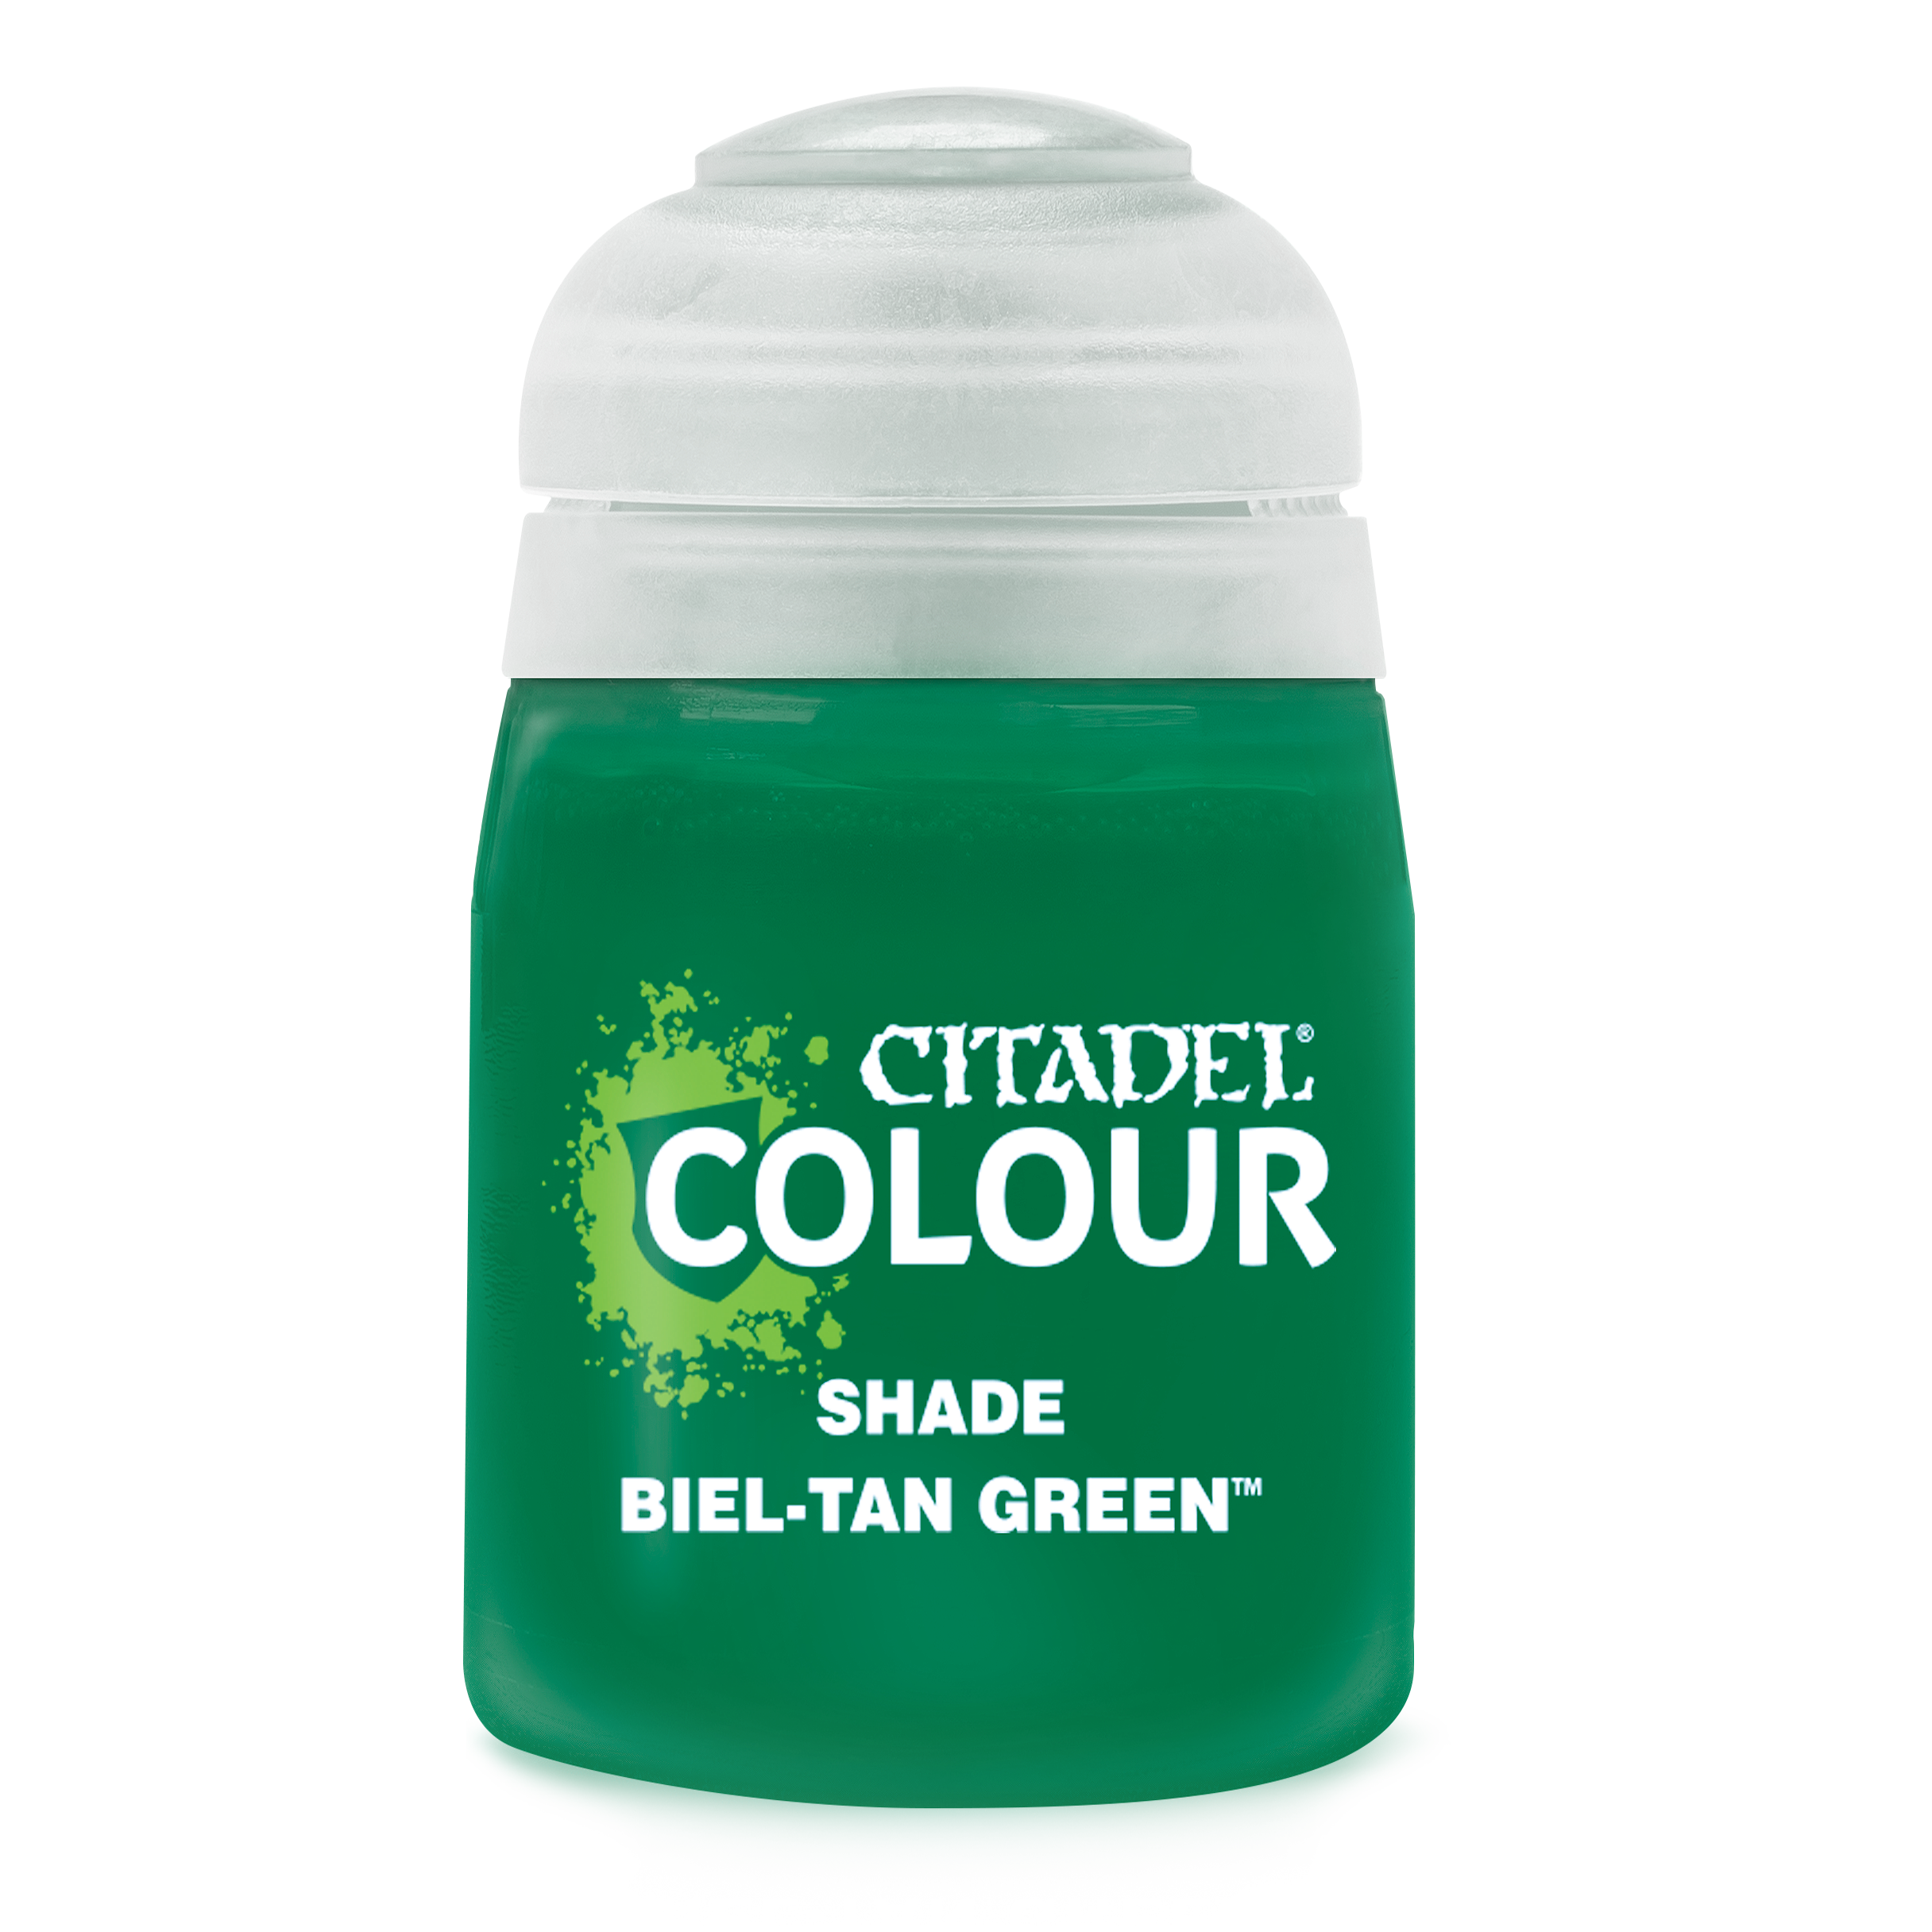 Biel-Tan Green Citadel Shade Paint | Lots Moore NSW